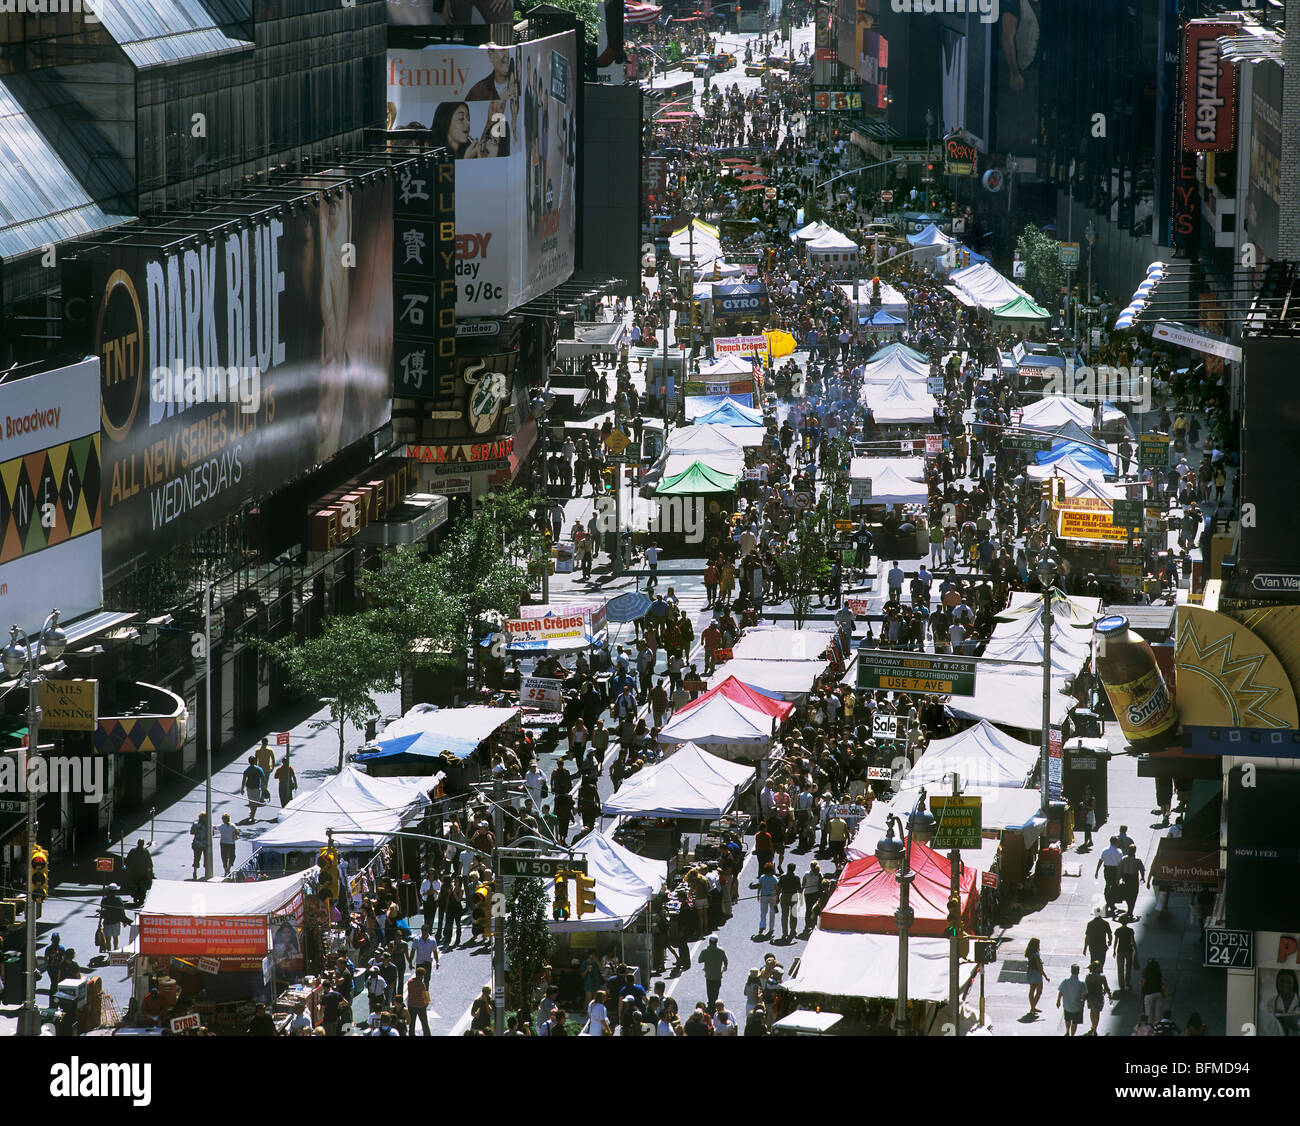 Un mercato di strada su Broadway, New York - hanno tenuto la domenica quando la strada è chiusa al traffico. Times Square è in background, Foto Stock